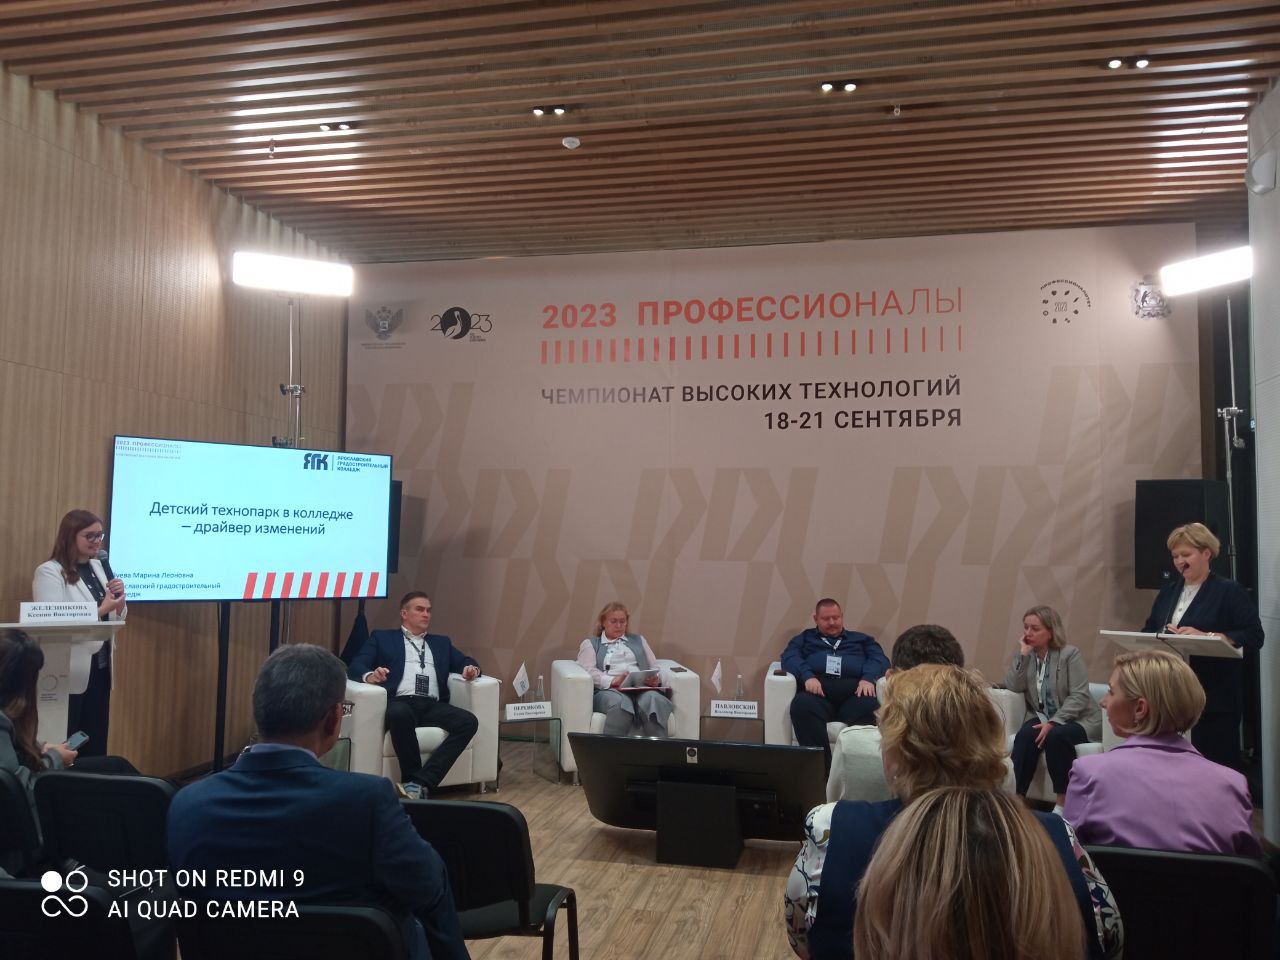 Ярославская делегация приняла участие в деловой программе чемпионата высоких технологий